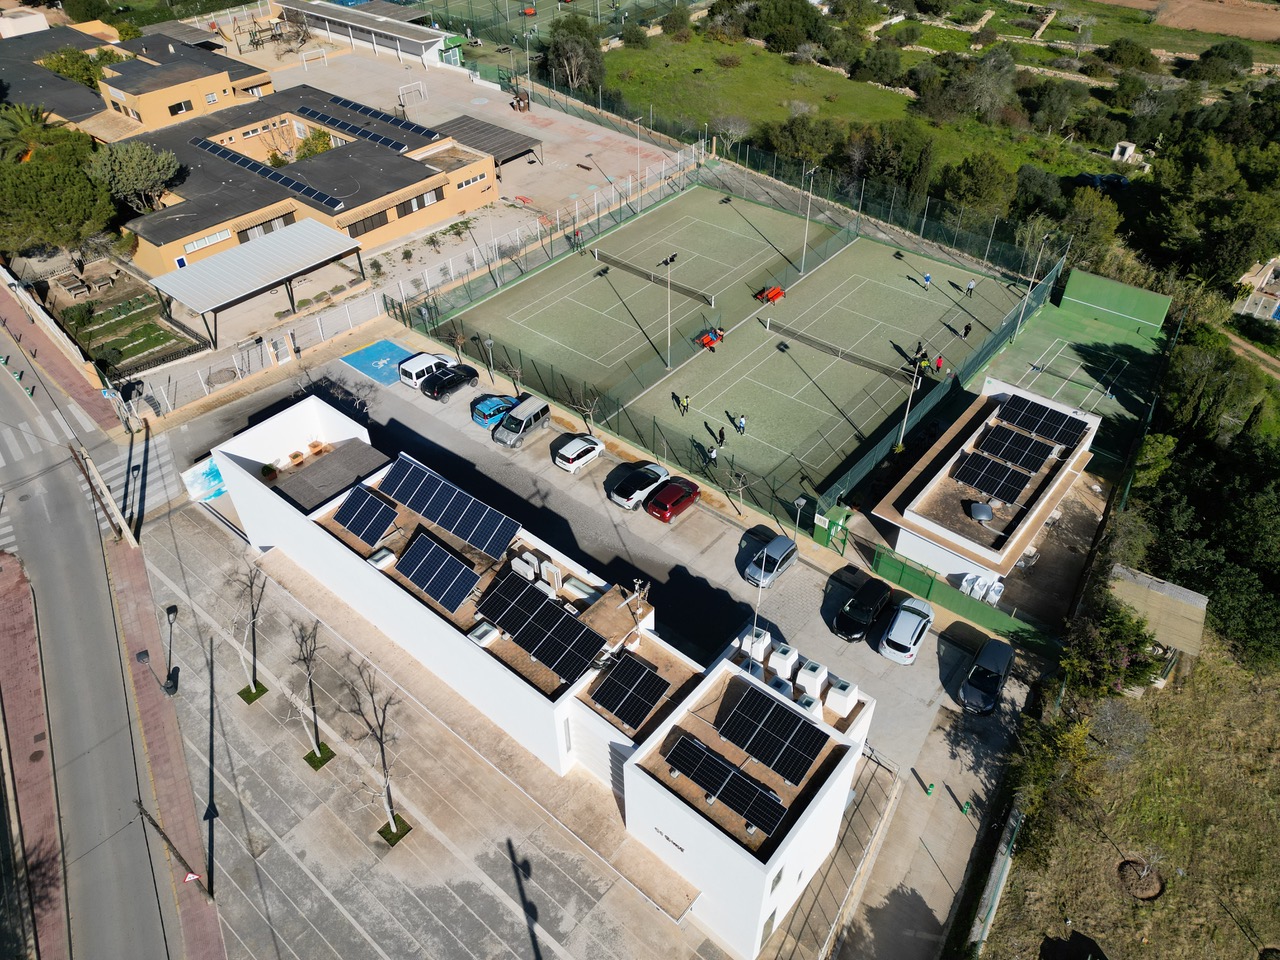 El Consell de Formentera, a través de l'àrea de Medi Ambient, està portant a terme l’ampliació de la cobertura d’instal·lacions fotovoltaiques en diferents edificis públics, com ara el CEIP Sant Ferran de ses Roques, el Centre de Dia, l’edifici social Es Molí i les pistes de tenis i el Centre d’Esports Nàutics de la Savina. Respecte al CEIP Sant Ferran de ses Roques, l’obra ja està executada i s’ha fet una instal·lació a la coberta del col·legi que permetrà generar 33,79 kwp d’energia neta i que se suma a la ja existent d’una potència de 30,24 kwp. Al Centre de Dia està a punt d’aprovar-se l’ampliació de la instal·lació actual, que passarà dels 25 kwp actuals a 125 kwp per donar una cobertura d’energia sostenible a l’edifici. En aquest projecte també hi ha previsió d’instal·lar algun punt de recàrrega de vehicles elèctrics al voltant dels edificis. Pel que fa a l’edifici social Es Molí i les pistes de tenis, l’obra s’acaba d’executar i compta amb una potència de 16,79 kwp. També s’està executant la instal·lació del CENF, que generarà 13,08 kwp. El conseller de Medi Ambient, Antoni Tur, ha assenyalat que des del Consell “es continua amb el desenvolupament dels objectius marcats al Pacte de Batles per al Clima i l’Energia, pel qual es compromet a aconseguir els objectius comunitaris de reducció de les emissions de gasos d’efecte hivernacle mitjançant actuacions relacionades amb l’eficiència energètica i les fonts d’energies renovables”. En aquest sentit, es calcula que les noves instal·lacions, al seu ple rendiment, evitaran una emissió a l’atmosfera de prop de vuitanta tones de CO2. Pròxims projectes Els pròxims projectes en els quals està treballant el departament de Medi Ambient són la pèrgola fotovoltaica que cobrirà una part de l’aparcament del Poliesportiu Antoni Blanc, amb una potència aproximada de 99 kwp, i comptarà amb cinc punts de recàrrega, amb 22 kwp de potència per punt. També s’està ultimant el projecte de cobrir la seu principal del Consell, a la plaça de la Constitució, amb una instal·lació que produirà 17 kwp d’energia neta. Antoni Tur ha destacat que aquestes actuacions, a més de millorar l’eficiència energètica, “també ens han d’ajudar a sensibilitzar els usuaris que fan ús de les instal·lacions i la ciutadania en general del que s’està fent". Cal recordar que en l’actualitat el Consell promou la creació de dos comunitats energètiques a l’àrea territorial de Sant Francesc, a través de la iniciativa de VPP4 Islands, un projecte que fomenta l’ús d’energies renovables a Europa, que incorpora la innovació tecnològica i al qual pertany Formentera des de l’any 2020. En aquest sentit, l’àrea de Medi Ambient està enllestint el Pla d'Acció per al Clima i l'Energia Sostenible (PACES), un document transversal que proposa diferents línies d’actuació i que ha de marcar l’horitzó de la política energètica a l’illa.